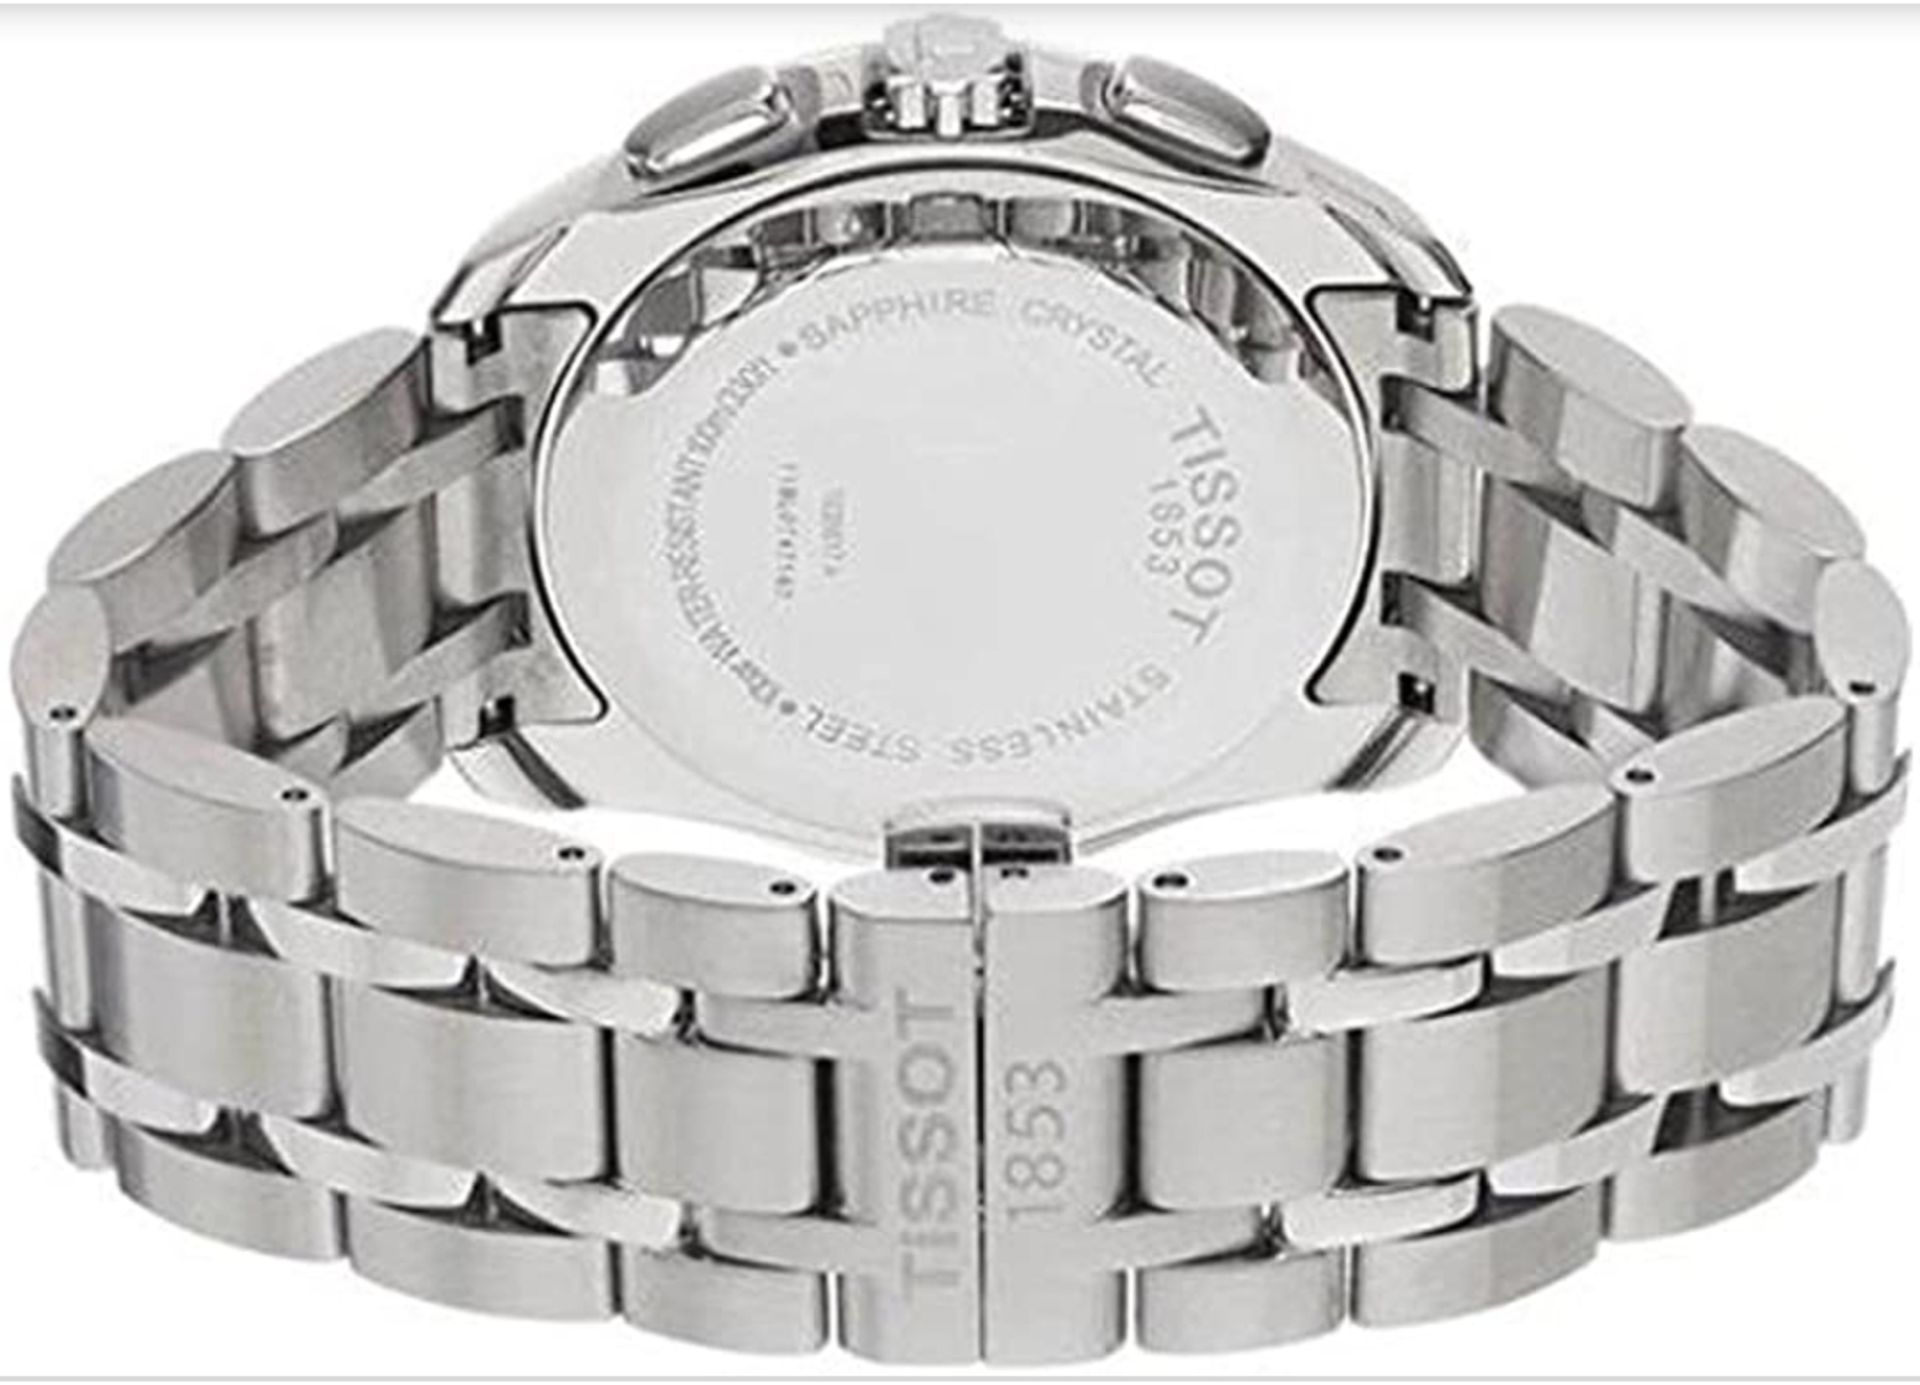 Tissot Men's Couturier 41Mm Steel Bracelet & Case Quartz White Dial Chrono Watch T035.617.11.031.00 - Image 8 of 10